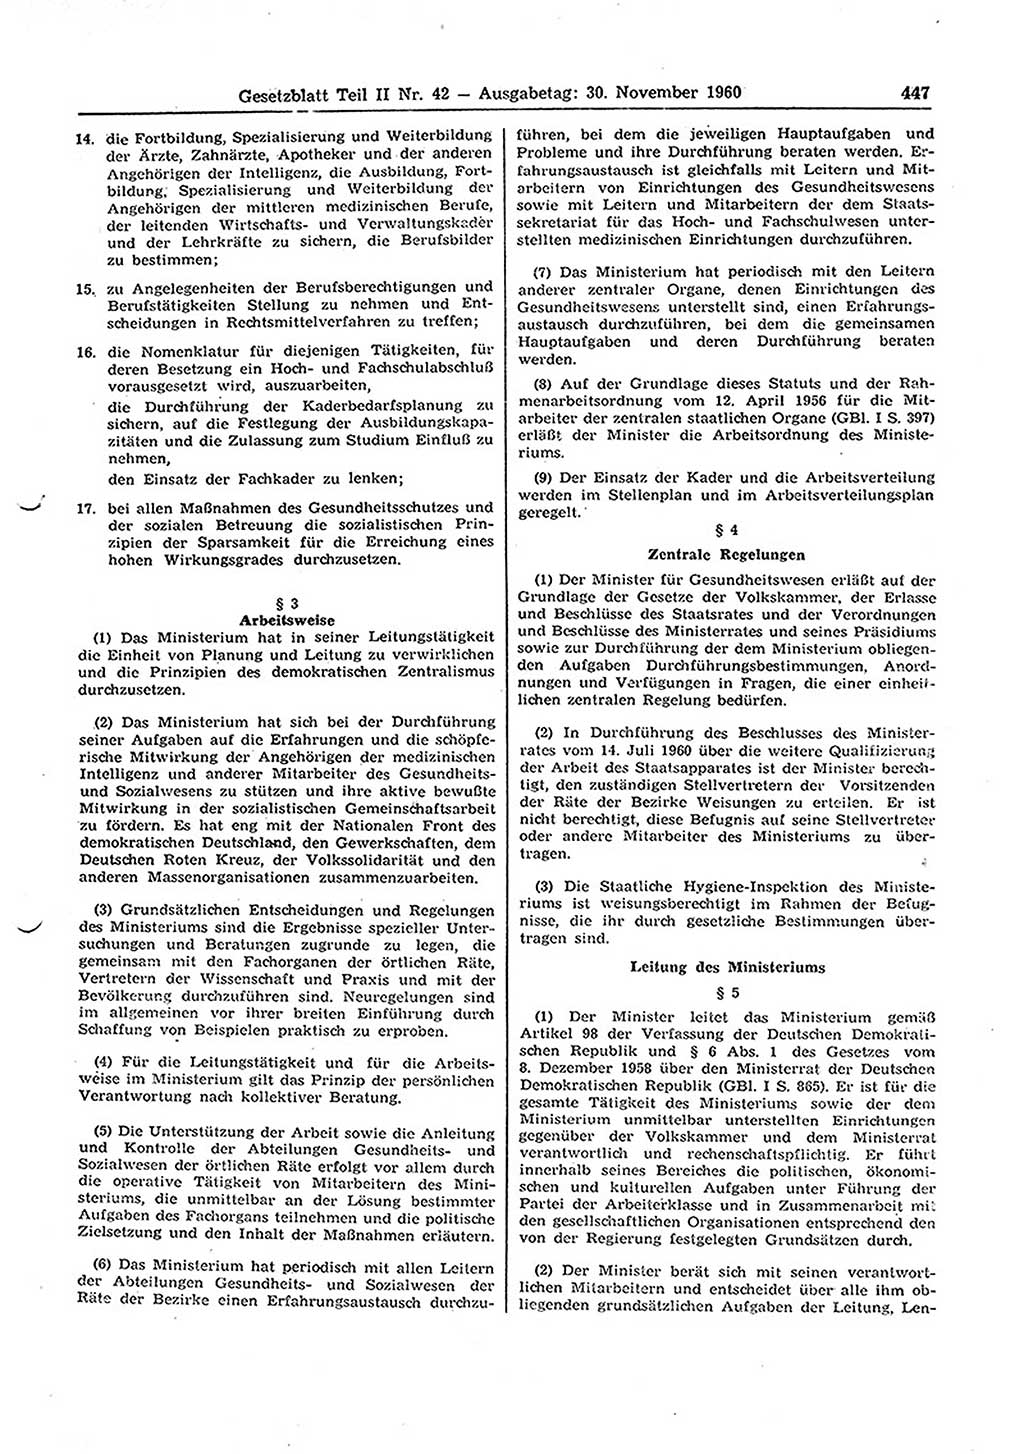 Gesetzblatt (GBl.) der Deutschen Demokratischen Republik (DDR) Teil ⅠⅠ 1960, Seite 447 (GBl. DDR ⅠⅠ 1960, S. 447)